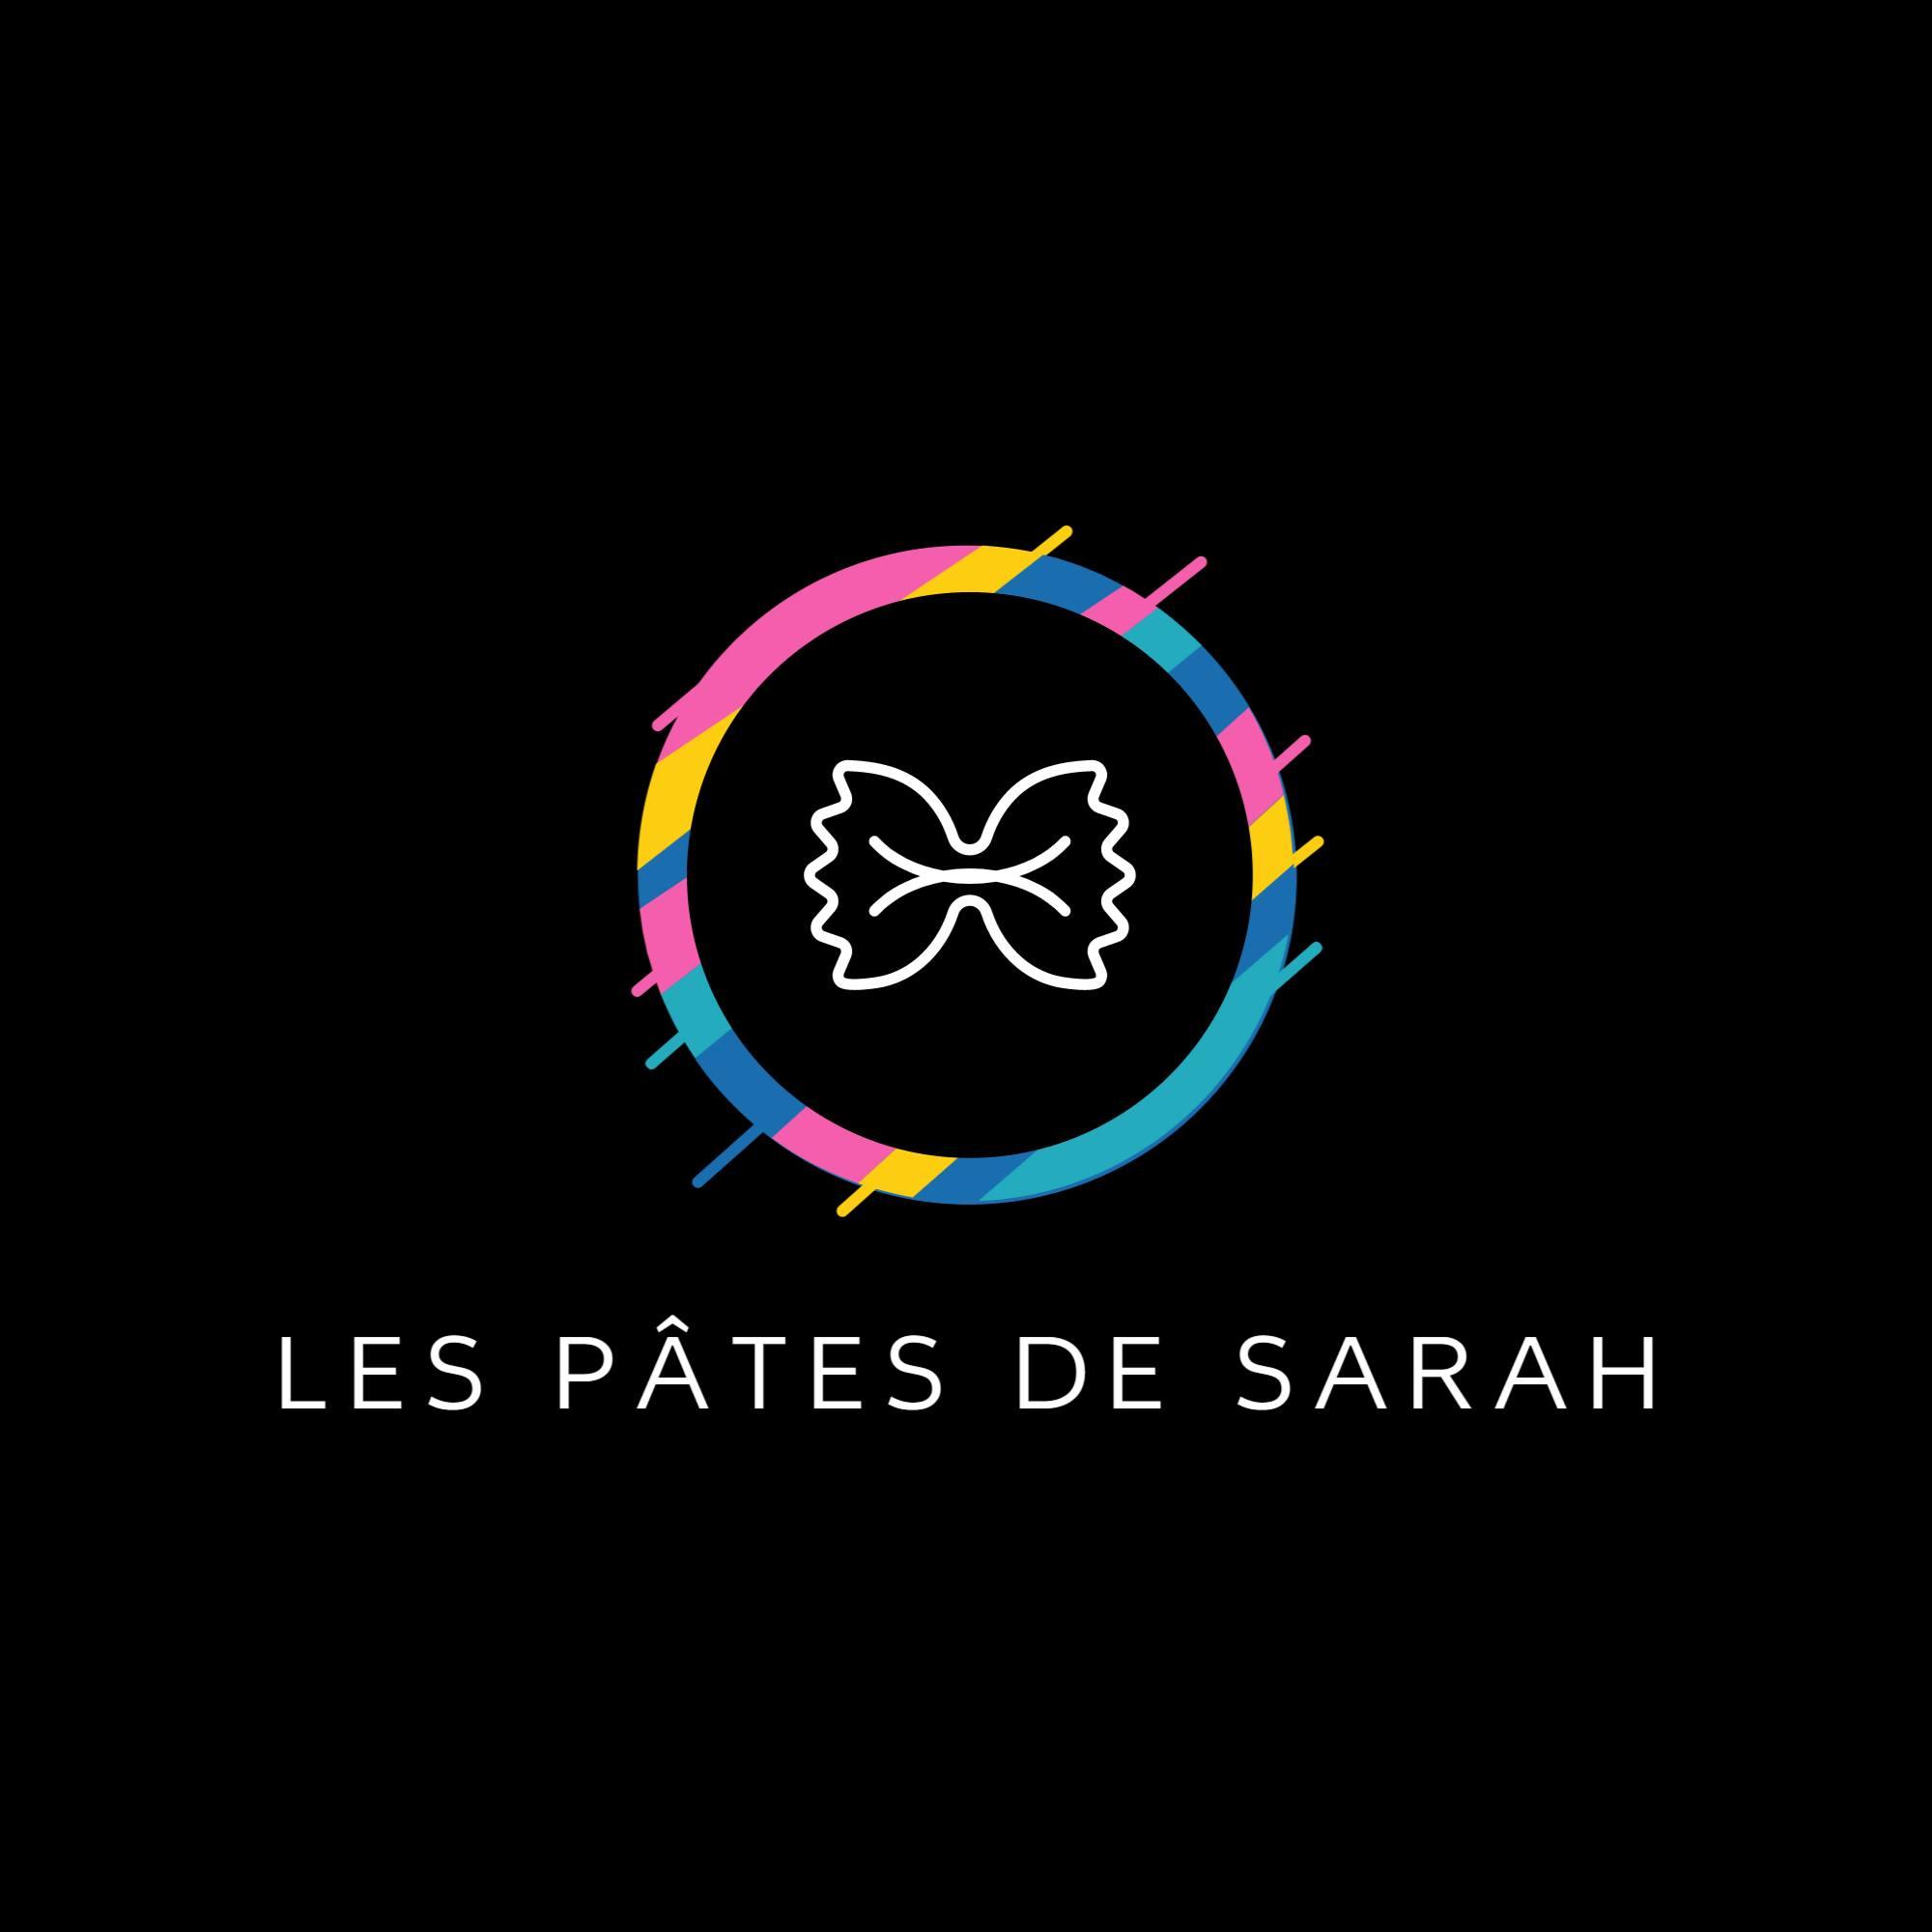 Les pâtes de Sarah